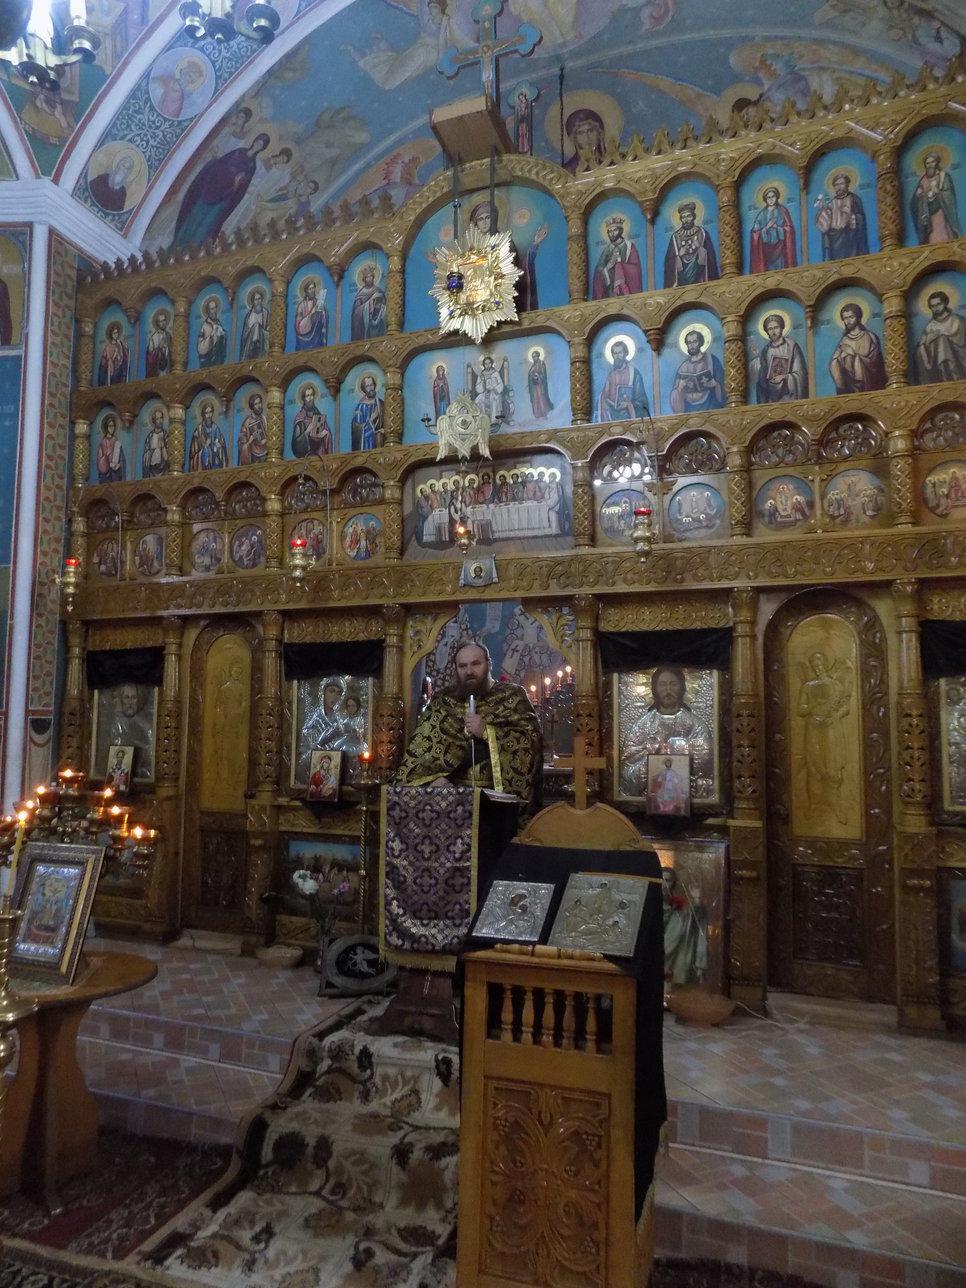 Duminica Ortodoxiei 